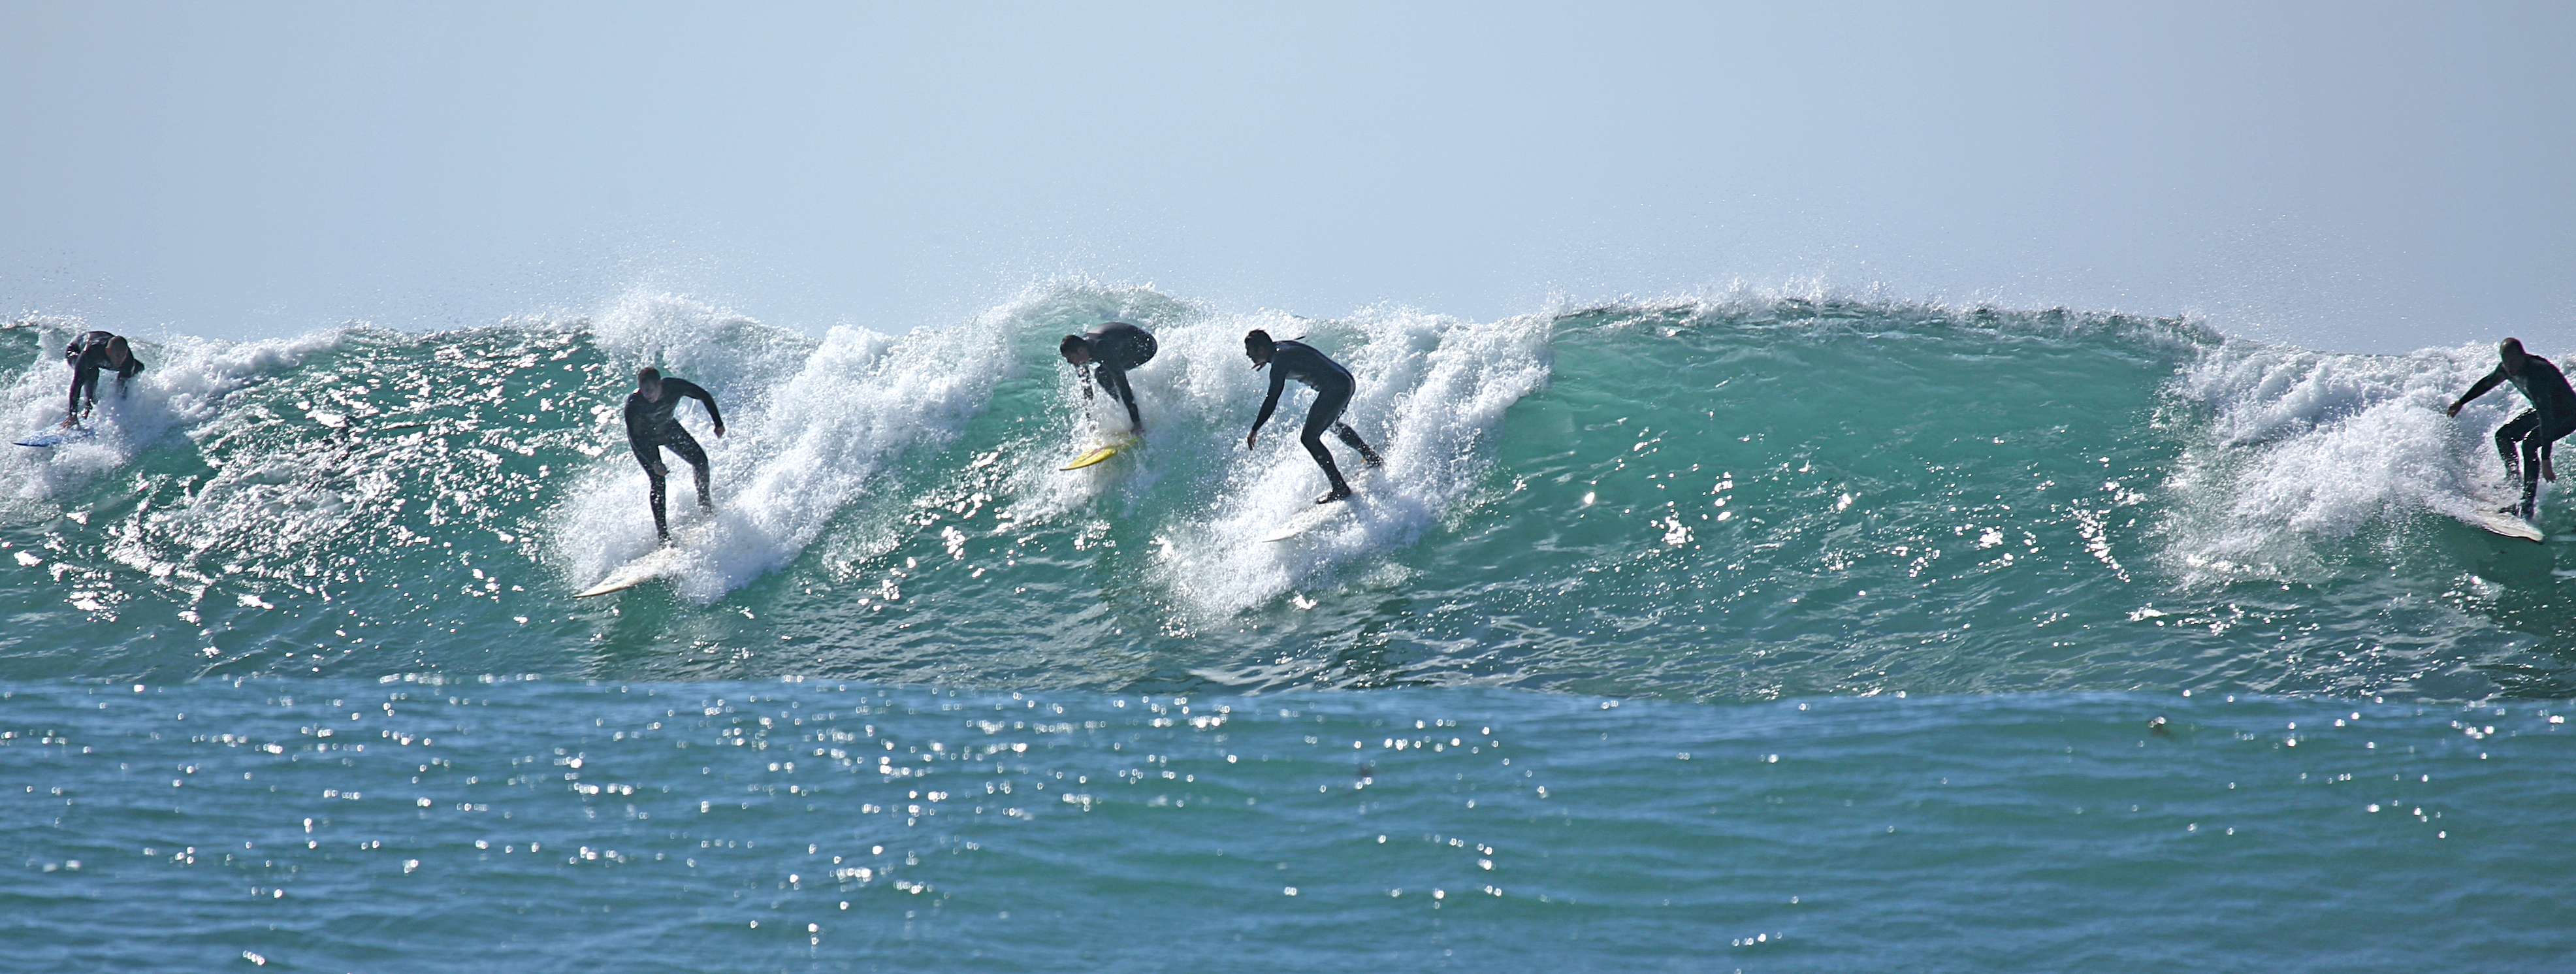 Best Season For Surfing In San Diego